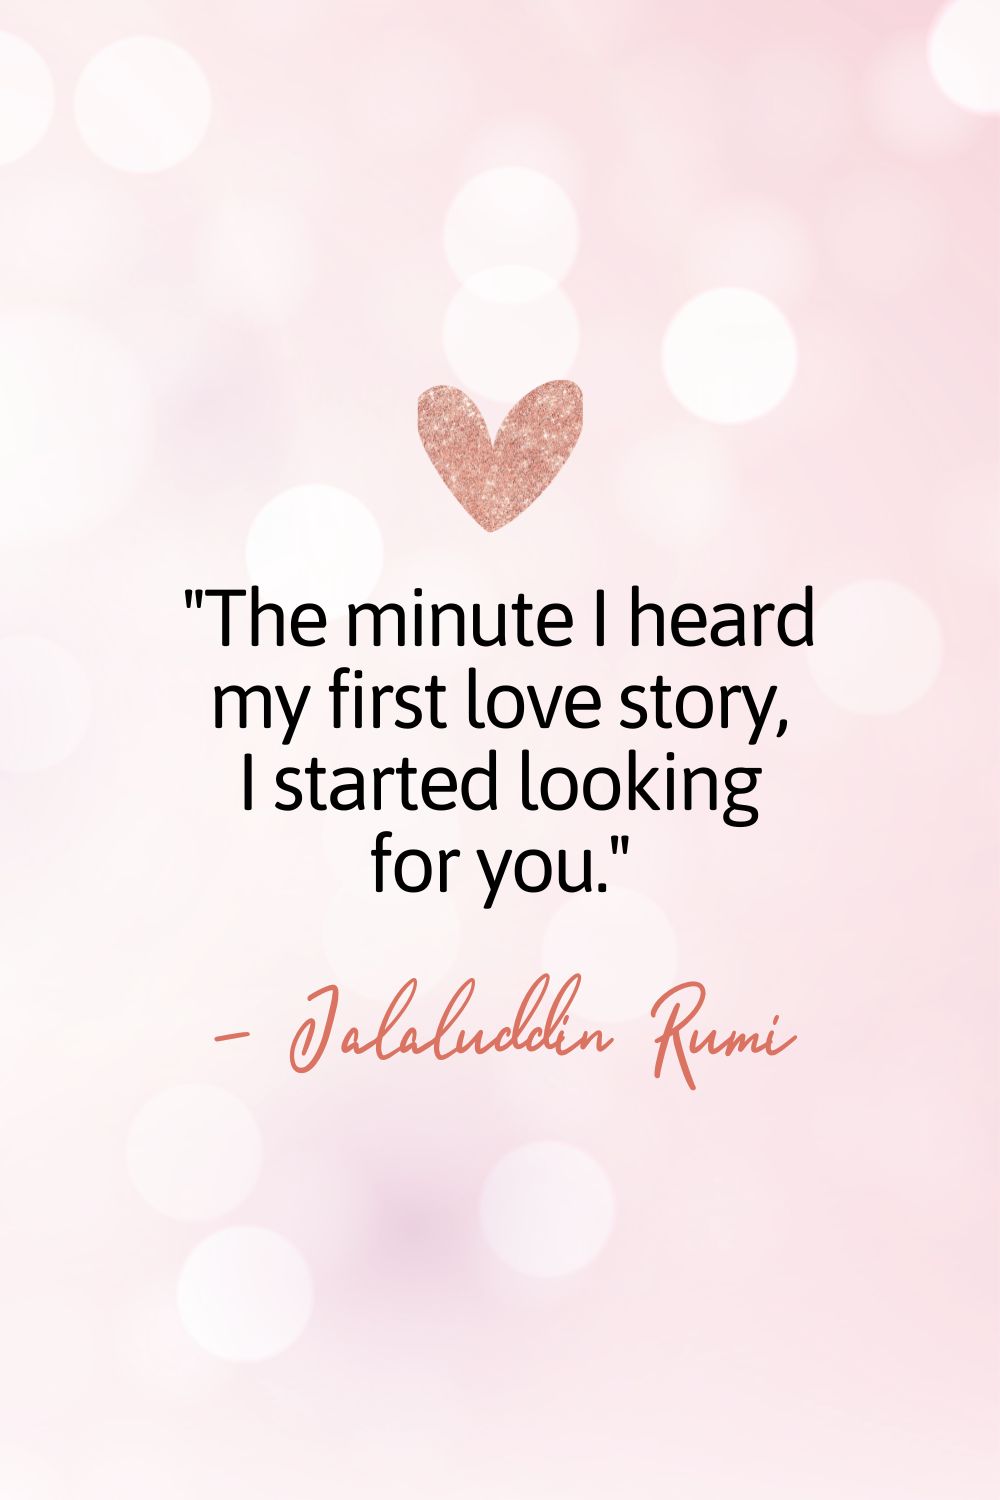 En cuanto oí mi primera historia de amor, empecé a buscarte.